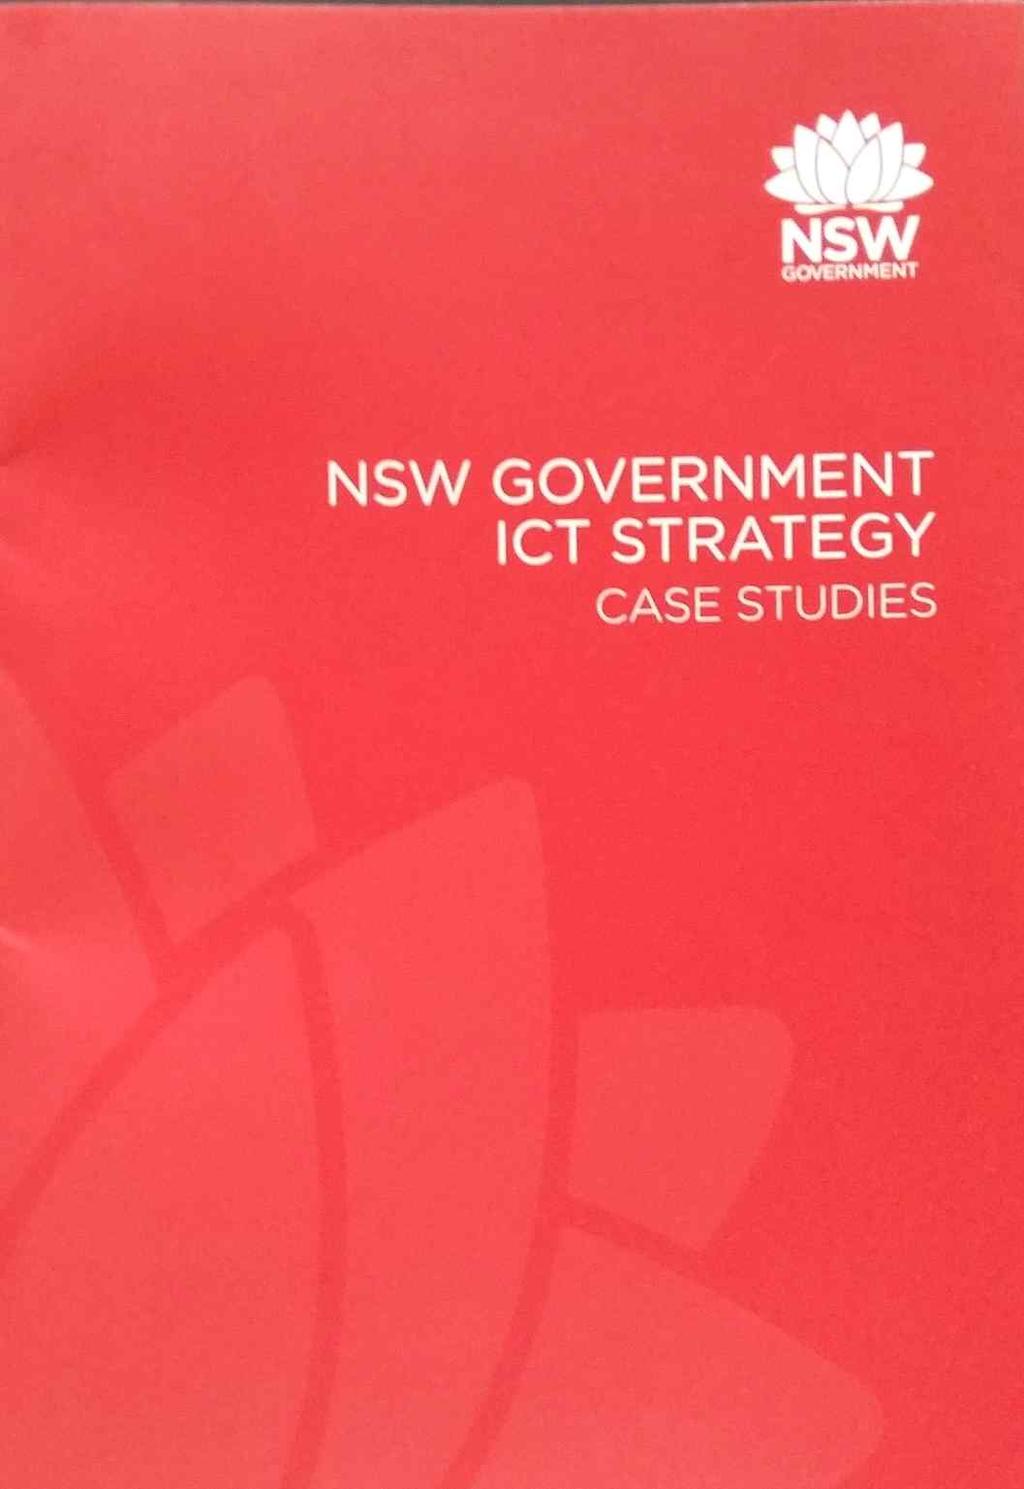 나. NSW 주 ICT 부서총괄국장과의질의응답내용요약 NSW 주정부의 ICT 추진방향설명 - 투자관리프로세스혁신에대하여 - 클라우드기반의서비스모델로전환에대하여 - 조달시스템개선과실행에대하여 - 정부접속데이량의증가에대하여 - ICT관리역량의강화에대하여 연수단질의내용 - 효율적인정보화가달성되기위해서는부서간협업이필수요건이라고생각한다.